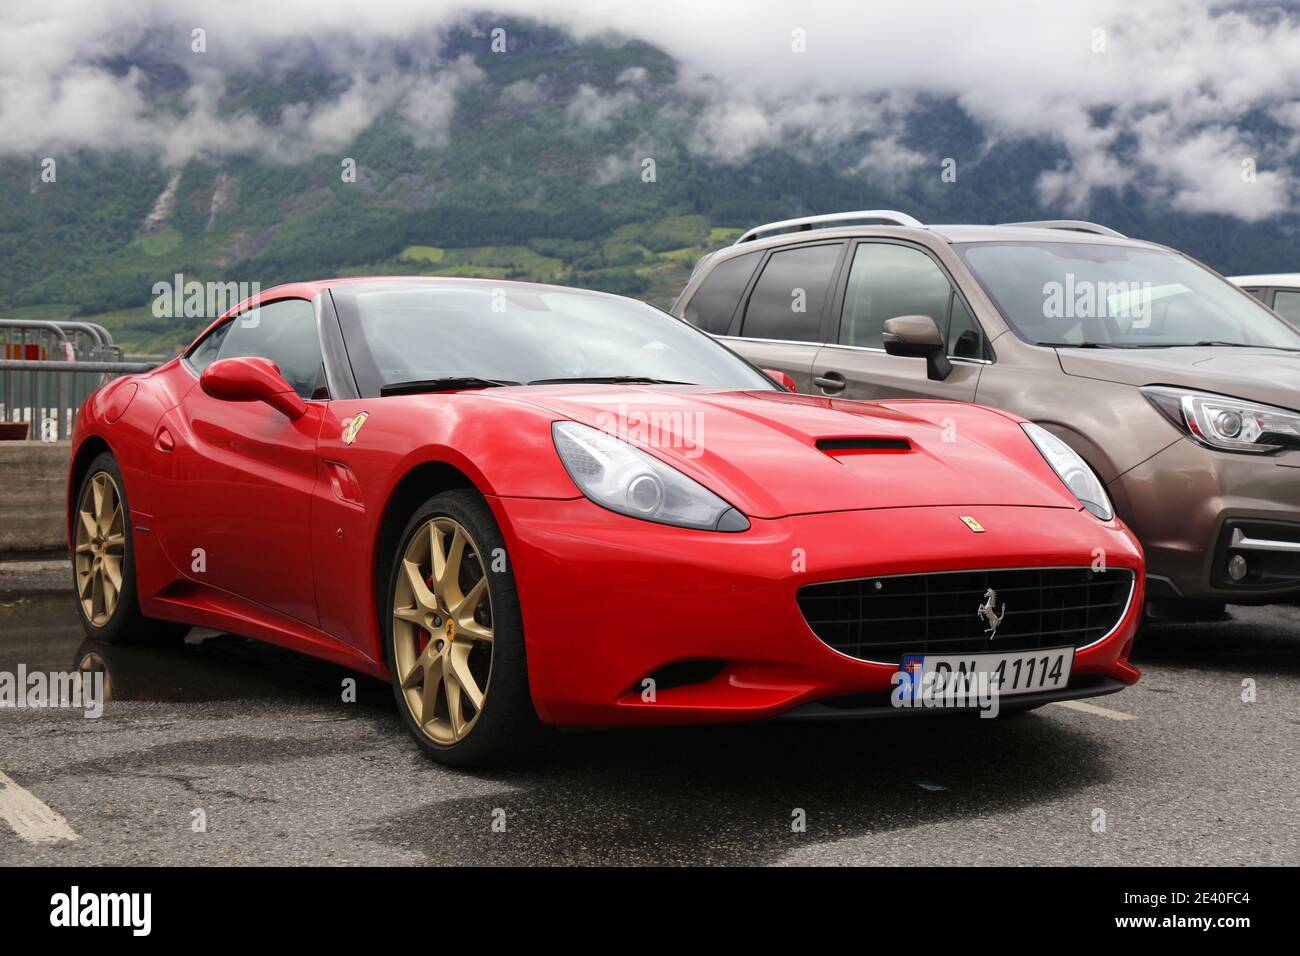 KINSARVIK, NORWEGEN - 30. JULI 2020: Ferrari California, roter Grand Touring Sportwagen in Norwegen geparkt. In Norwegen sind 2.8 Millionen Autos zugelassen Stockfoto